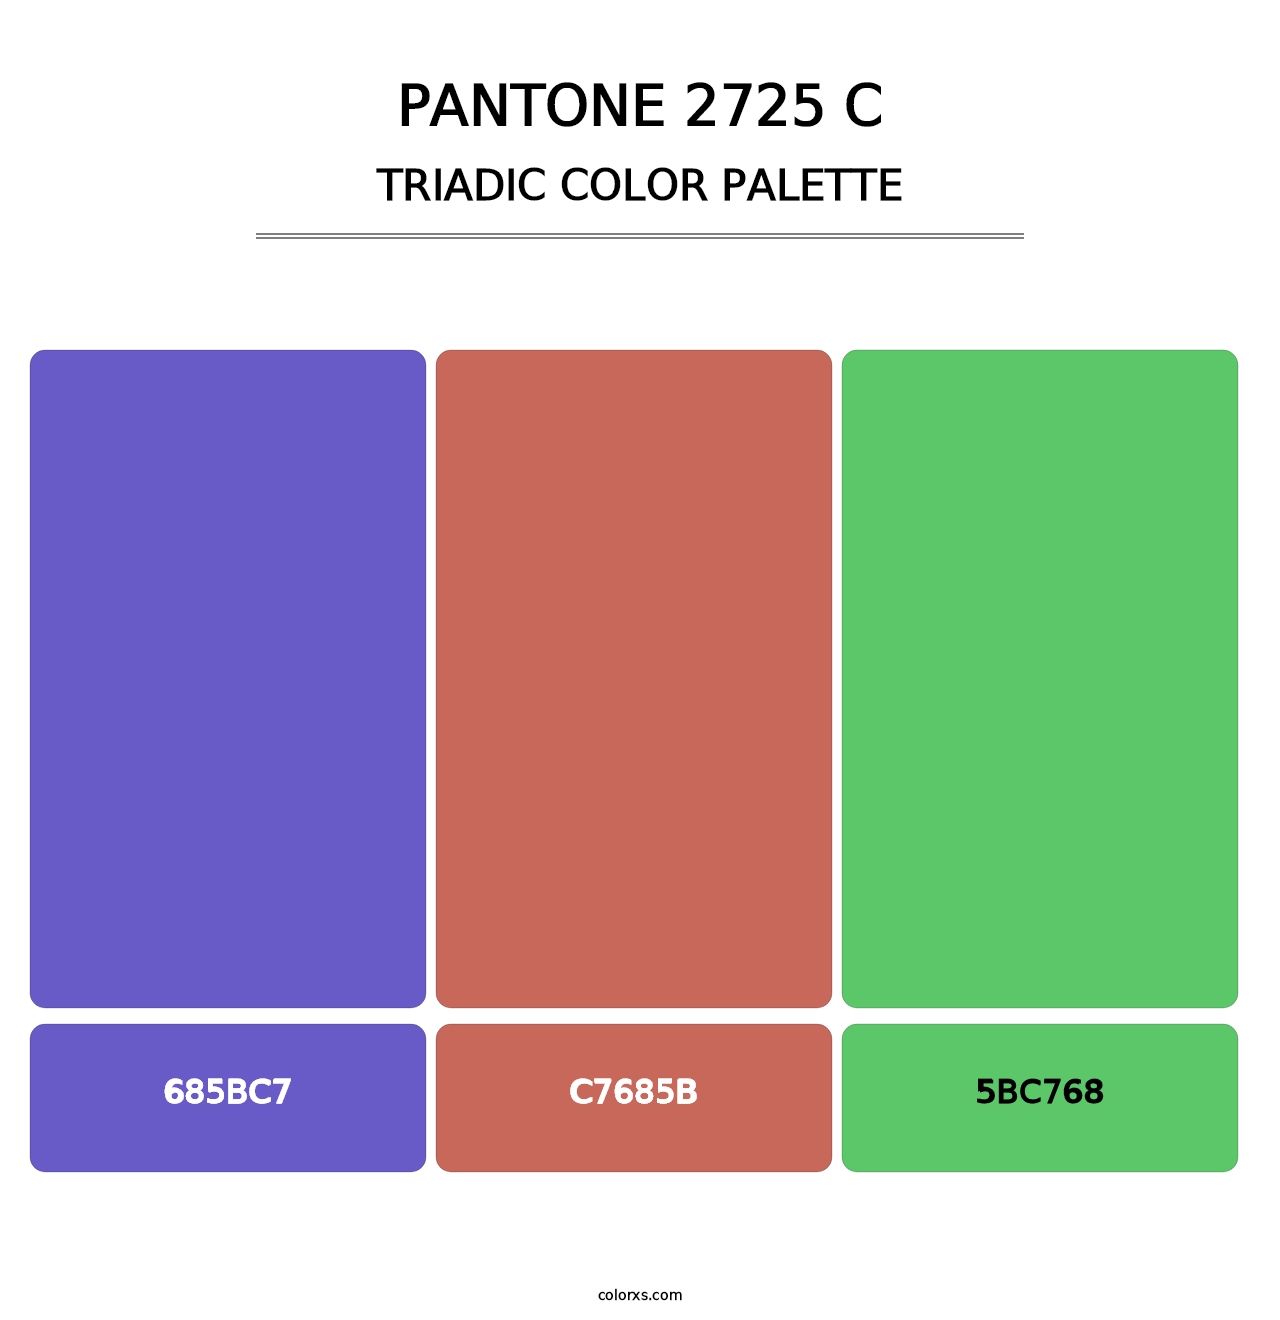 PANTONE 2725 C - Triadic Color Palette